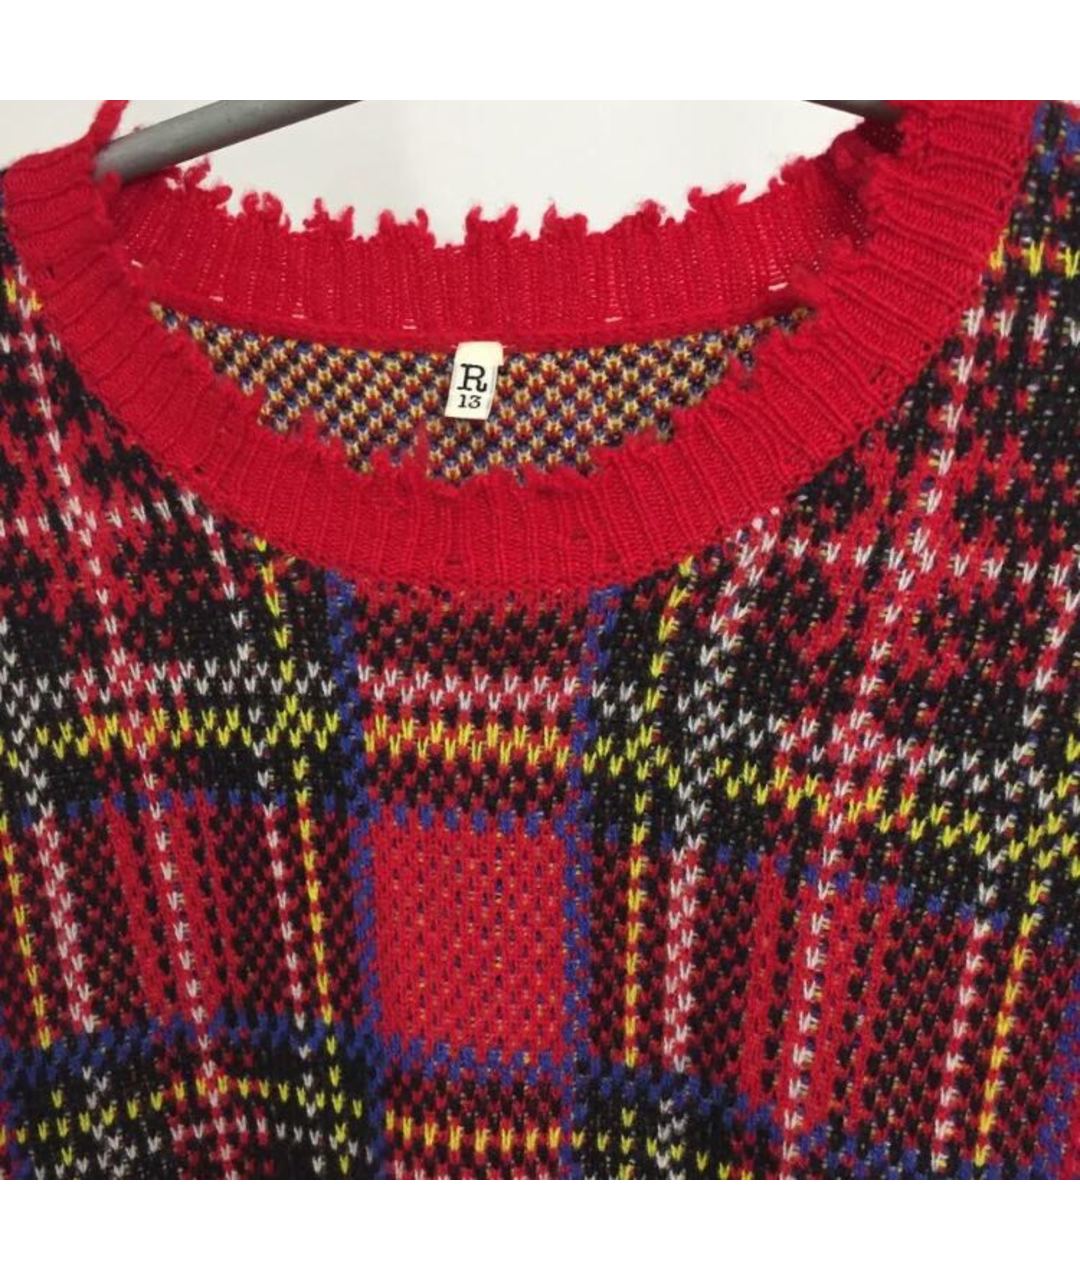 R13 Красный шерстяной джемпер / свитер, фото 2